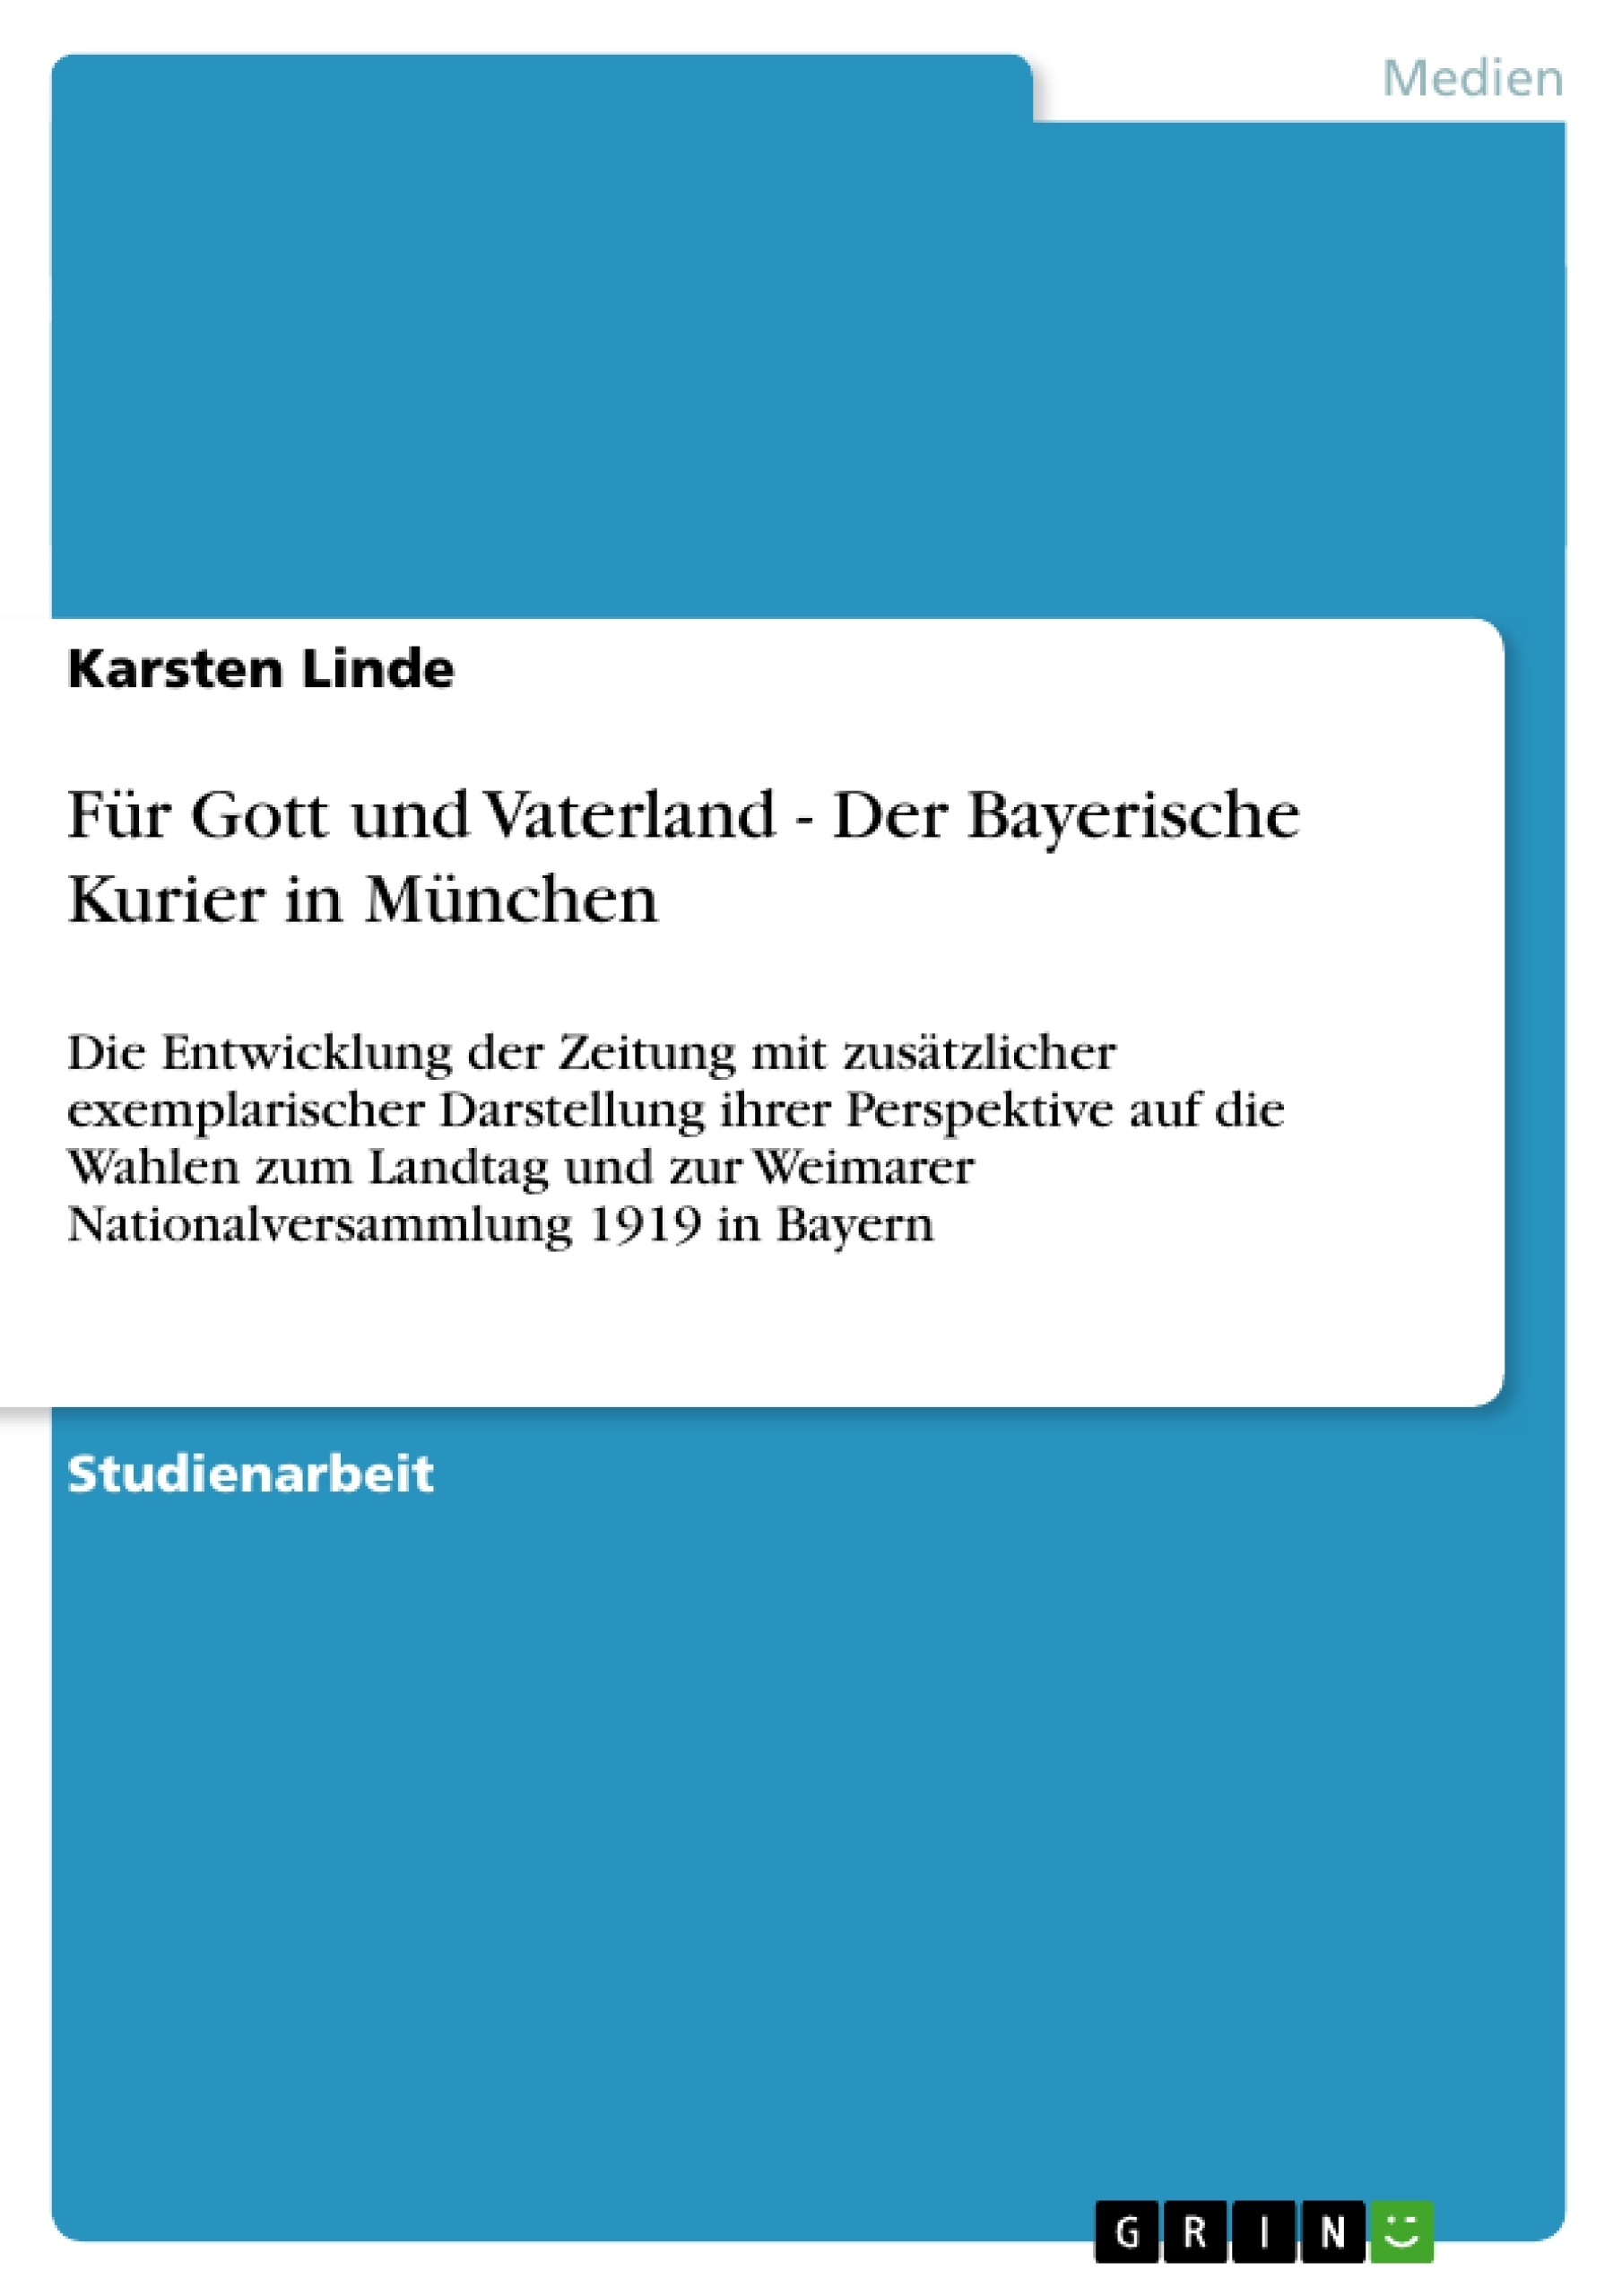 Titel: Für Gott und Vaterland - Der Bayerische Kurier in München